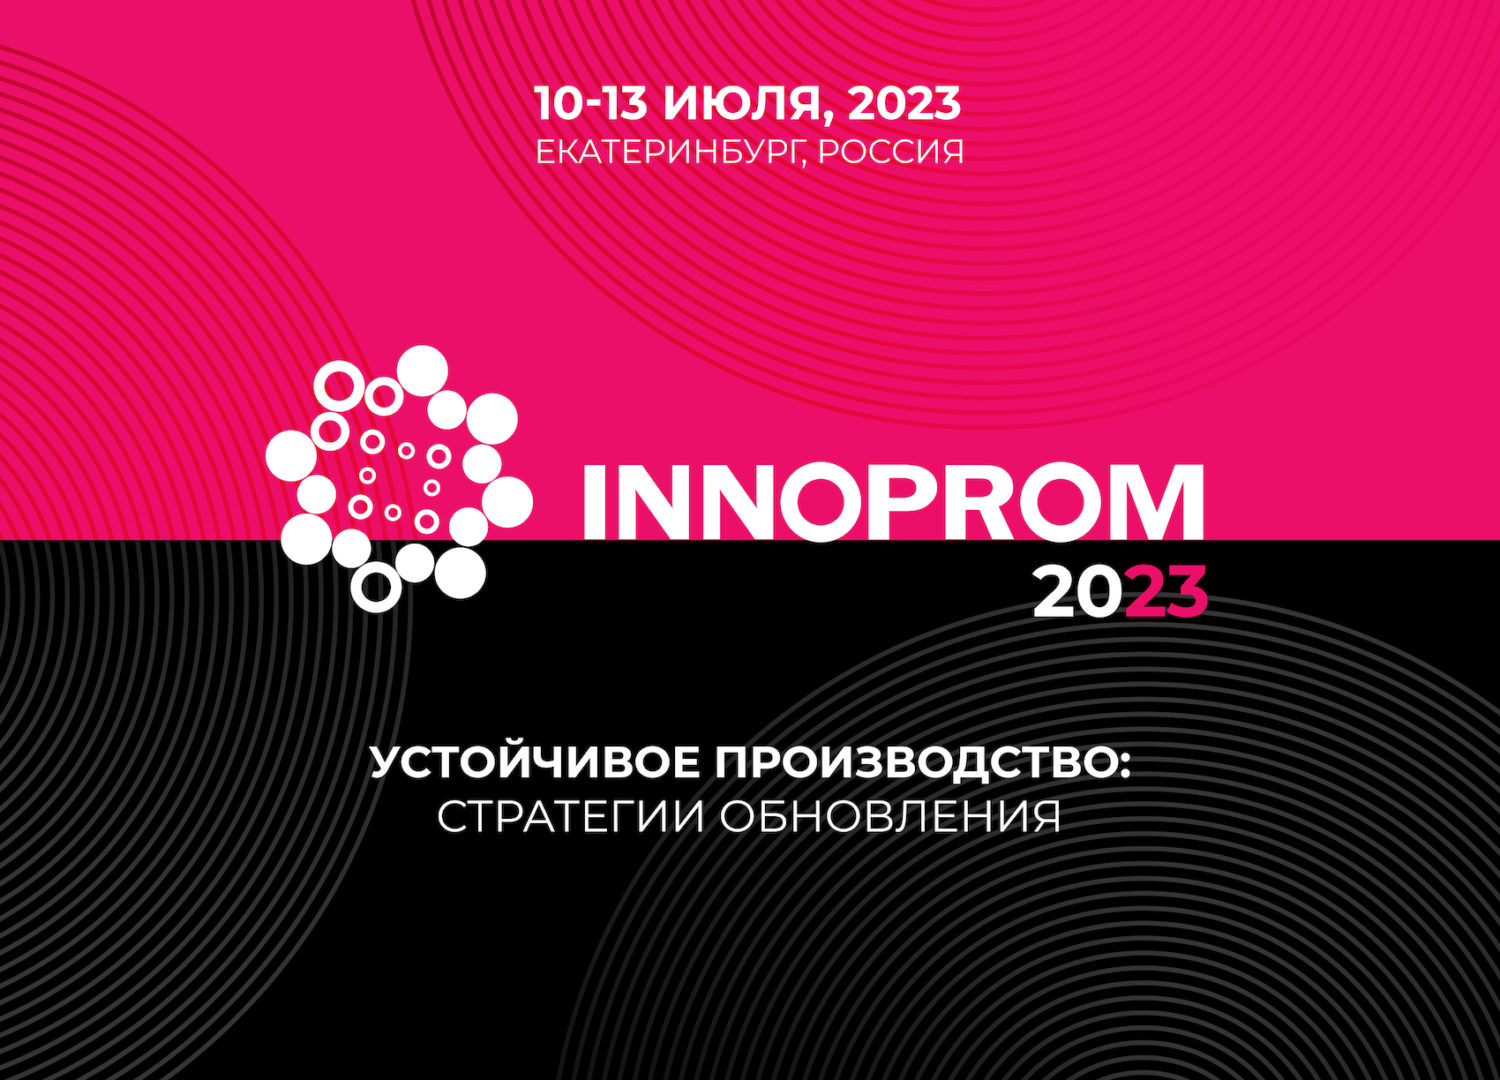 Стали известны даты проведения выставки «Иннопром-2023» в Екатеринбурге